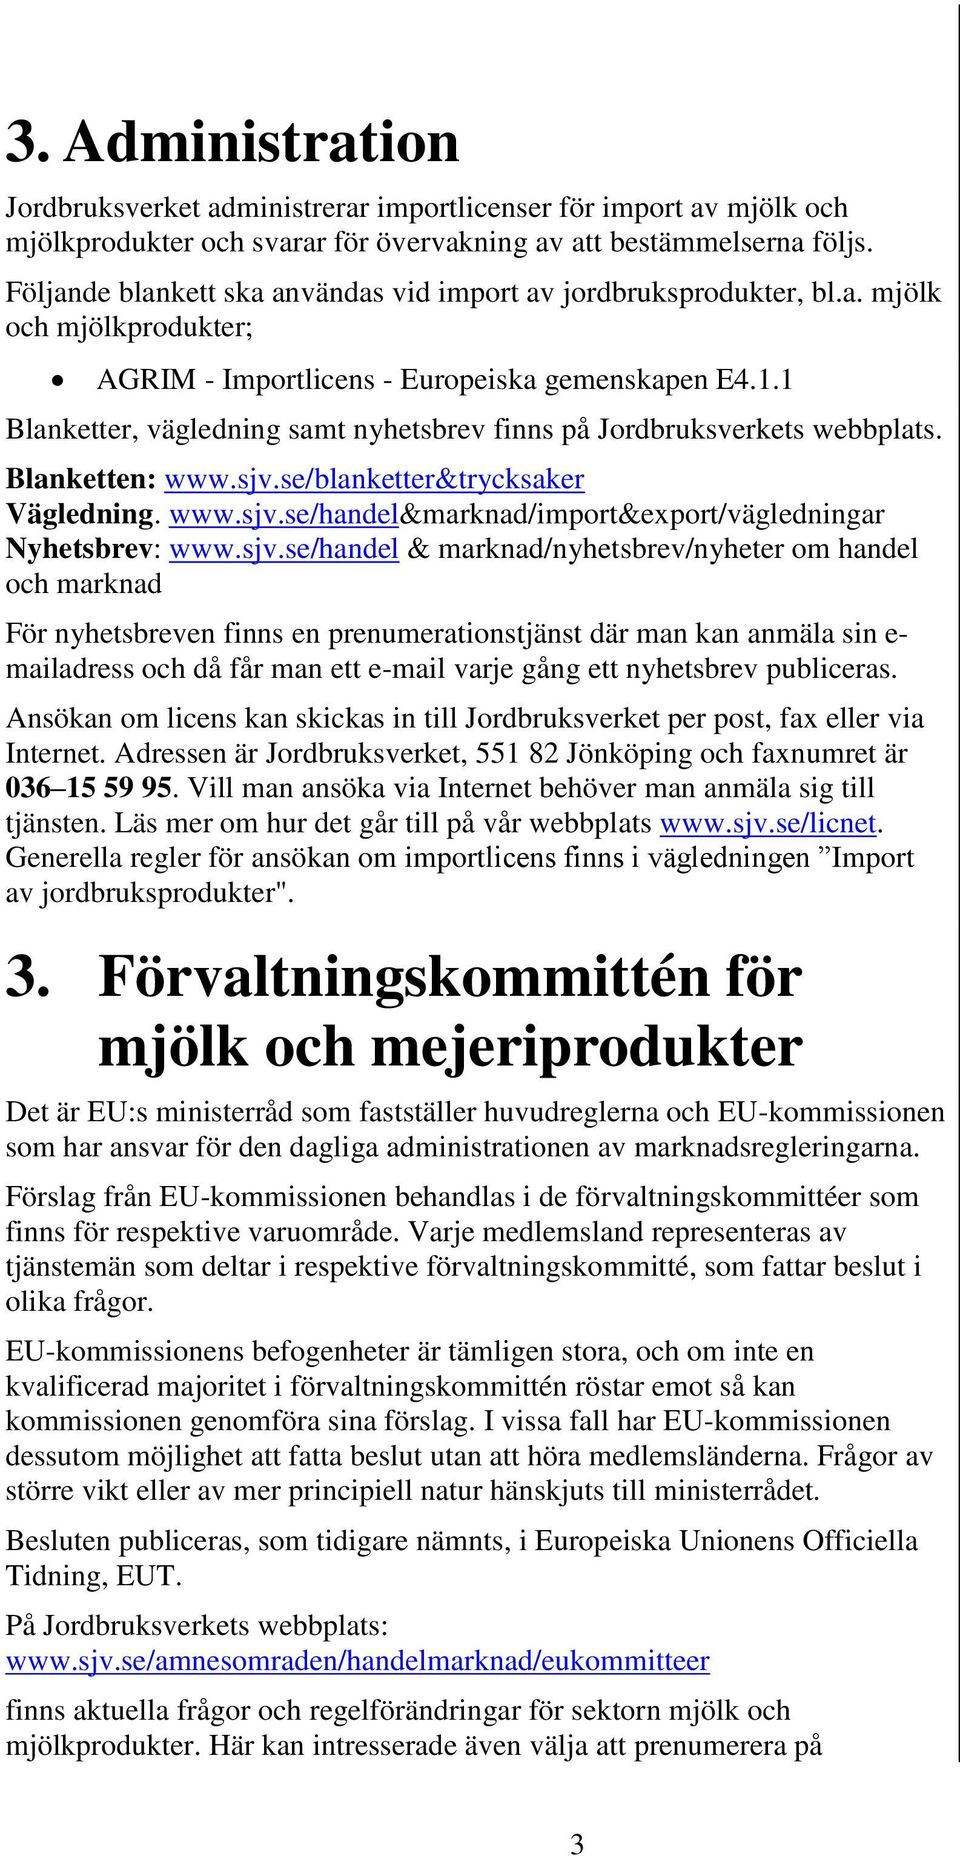 1 Blanketter, vägledning samt nyhetsbrev finns på Jordbruksverkets webbplats. Blanketten: www.sjv.se/blanketter&trycksaker Vägledning. www.sjv.se/handel&marknad/import&export/vägledningar Nyhetsbrev: www.